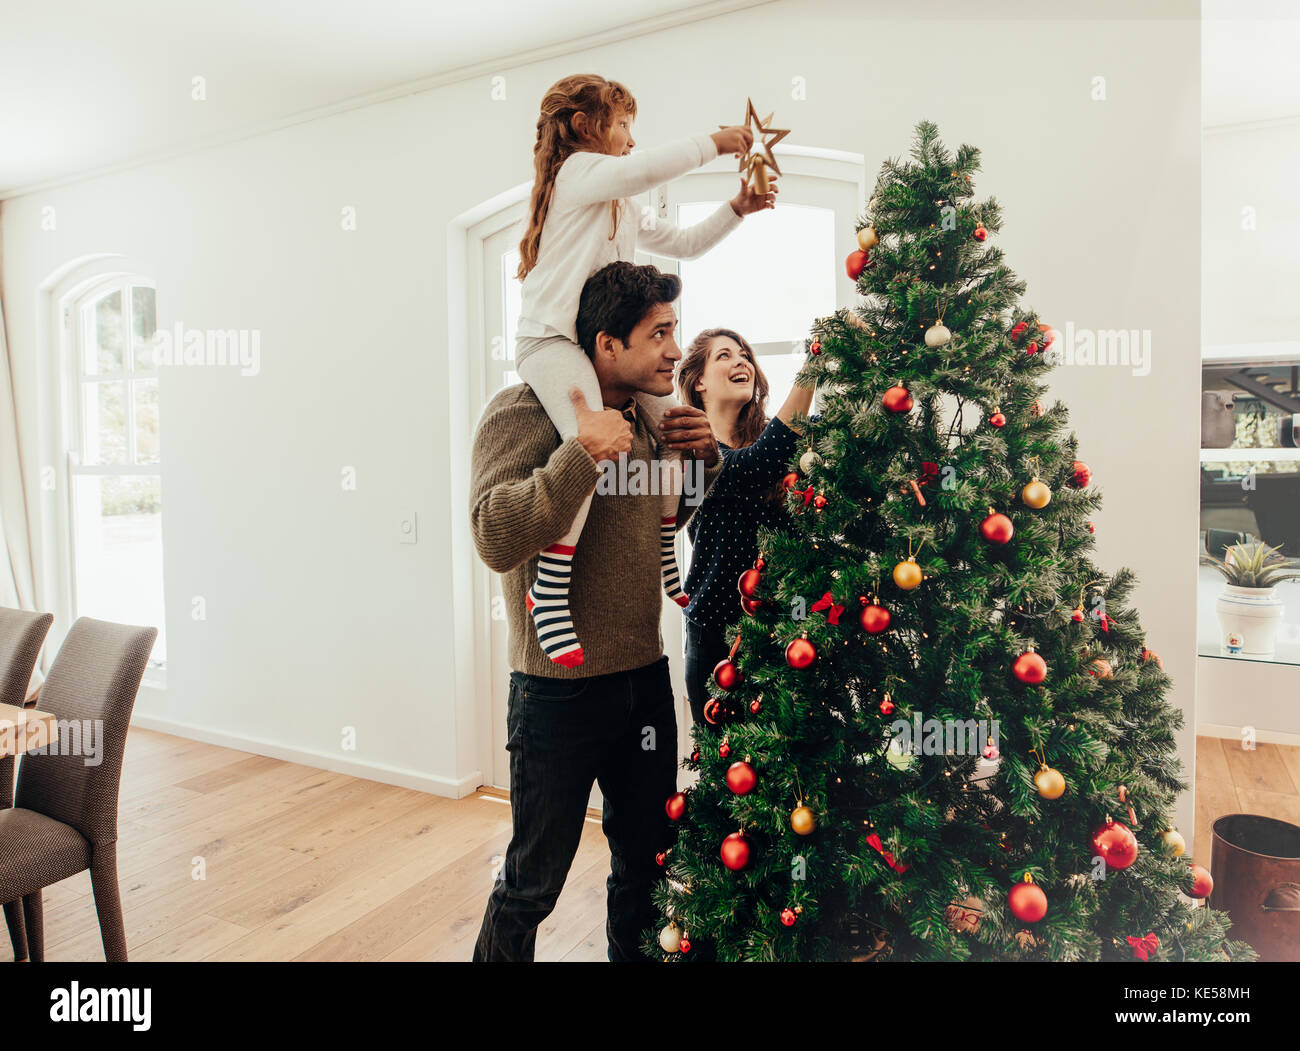 Famiglia decorare un albero di Natale. Giovane uomo con sua figlia sulle spalle di aiutarla a decorare l'albero di Natale. Foto Stock